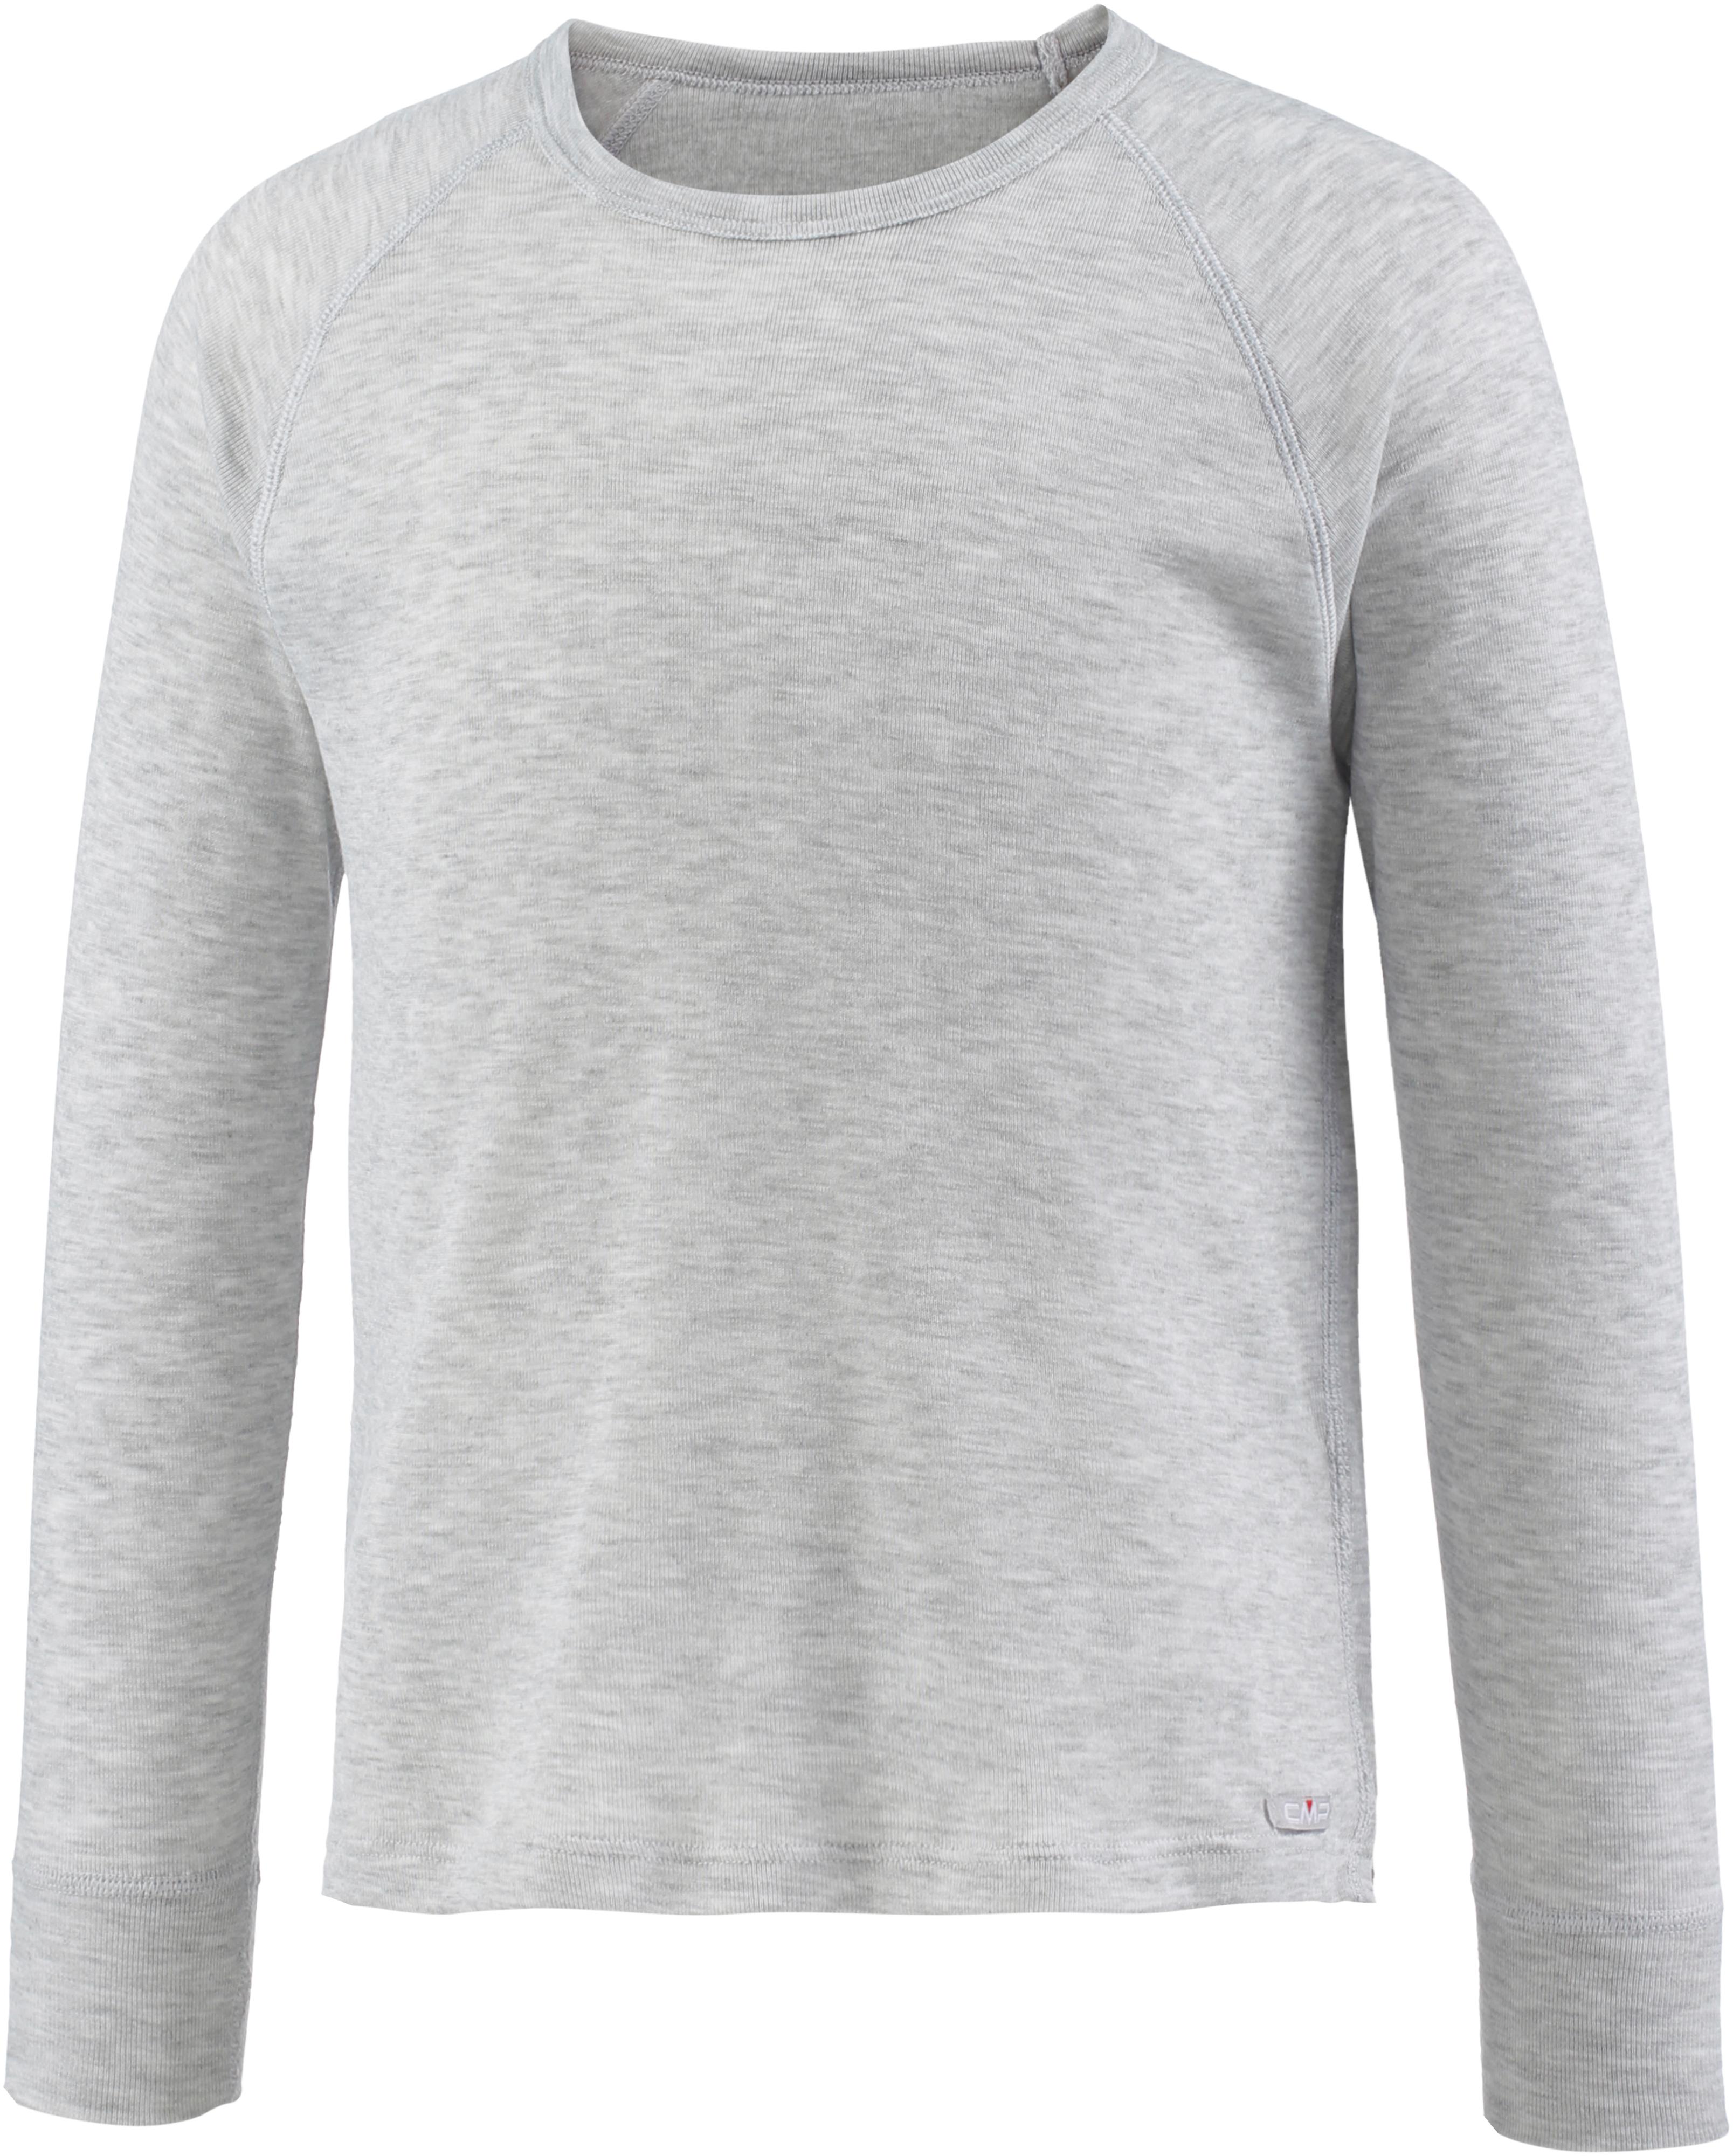 Unterhemd Online grigio melange im von Shop CMP SportScheck Jungen kaufen